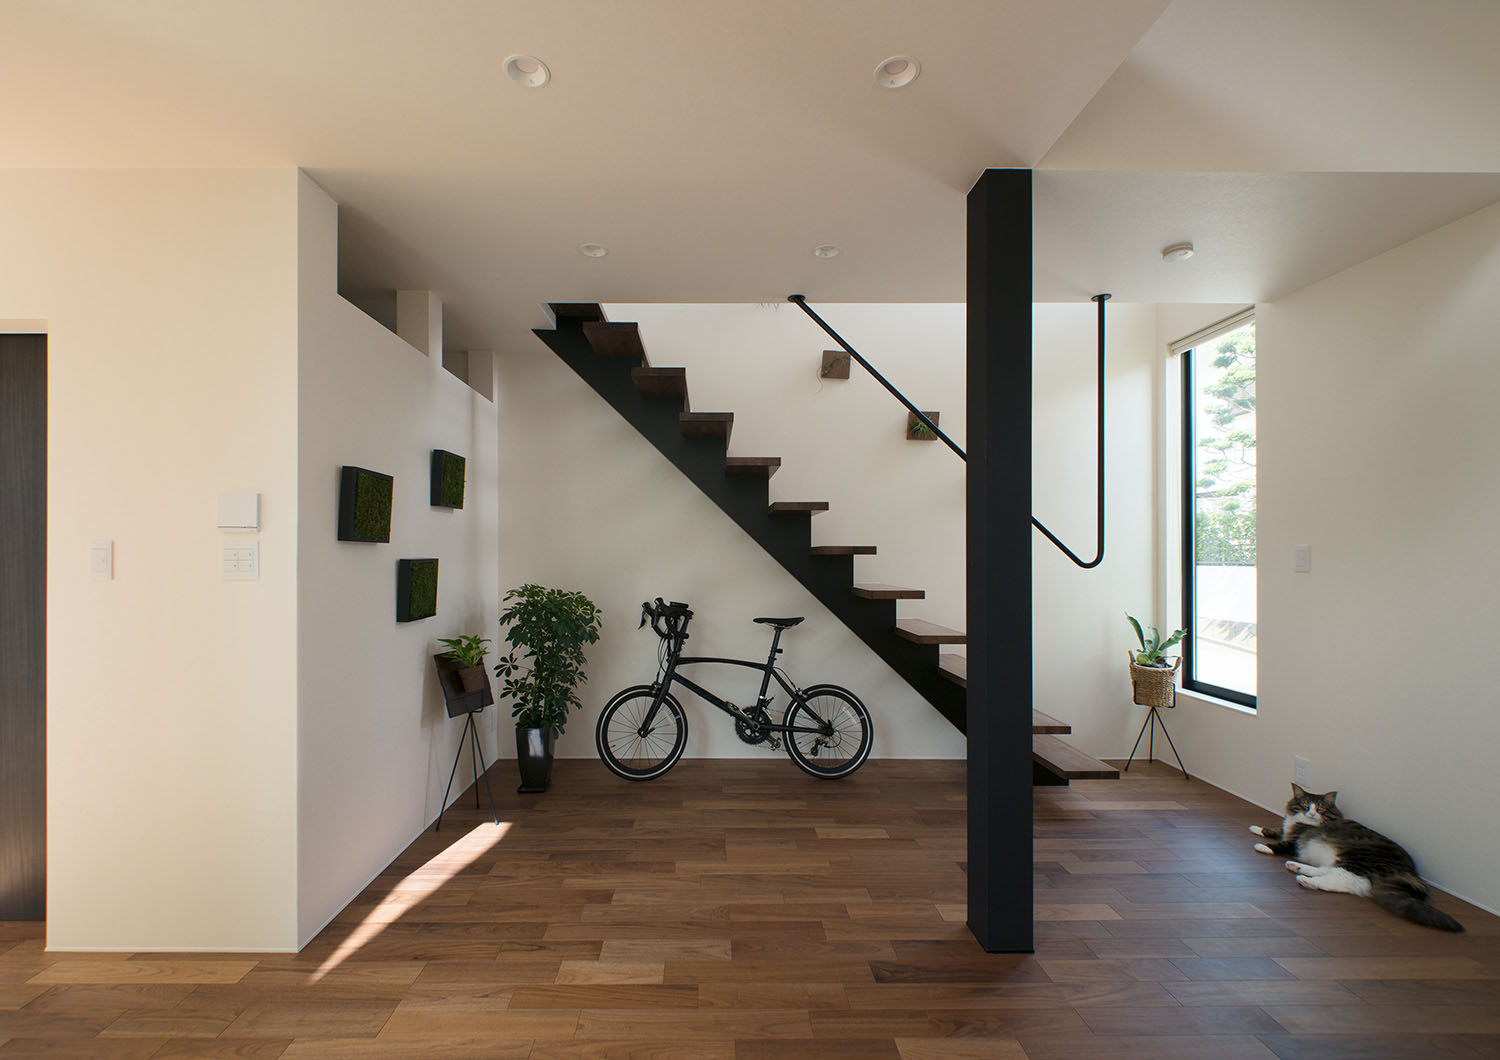 スケルトン階段の下に自転車が収納されている部屋・デザイン住宅